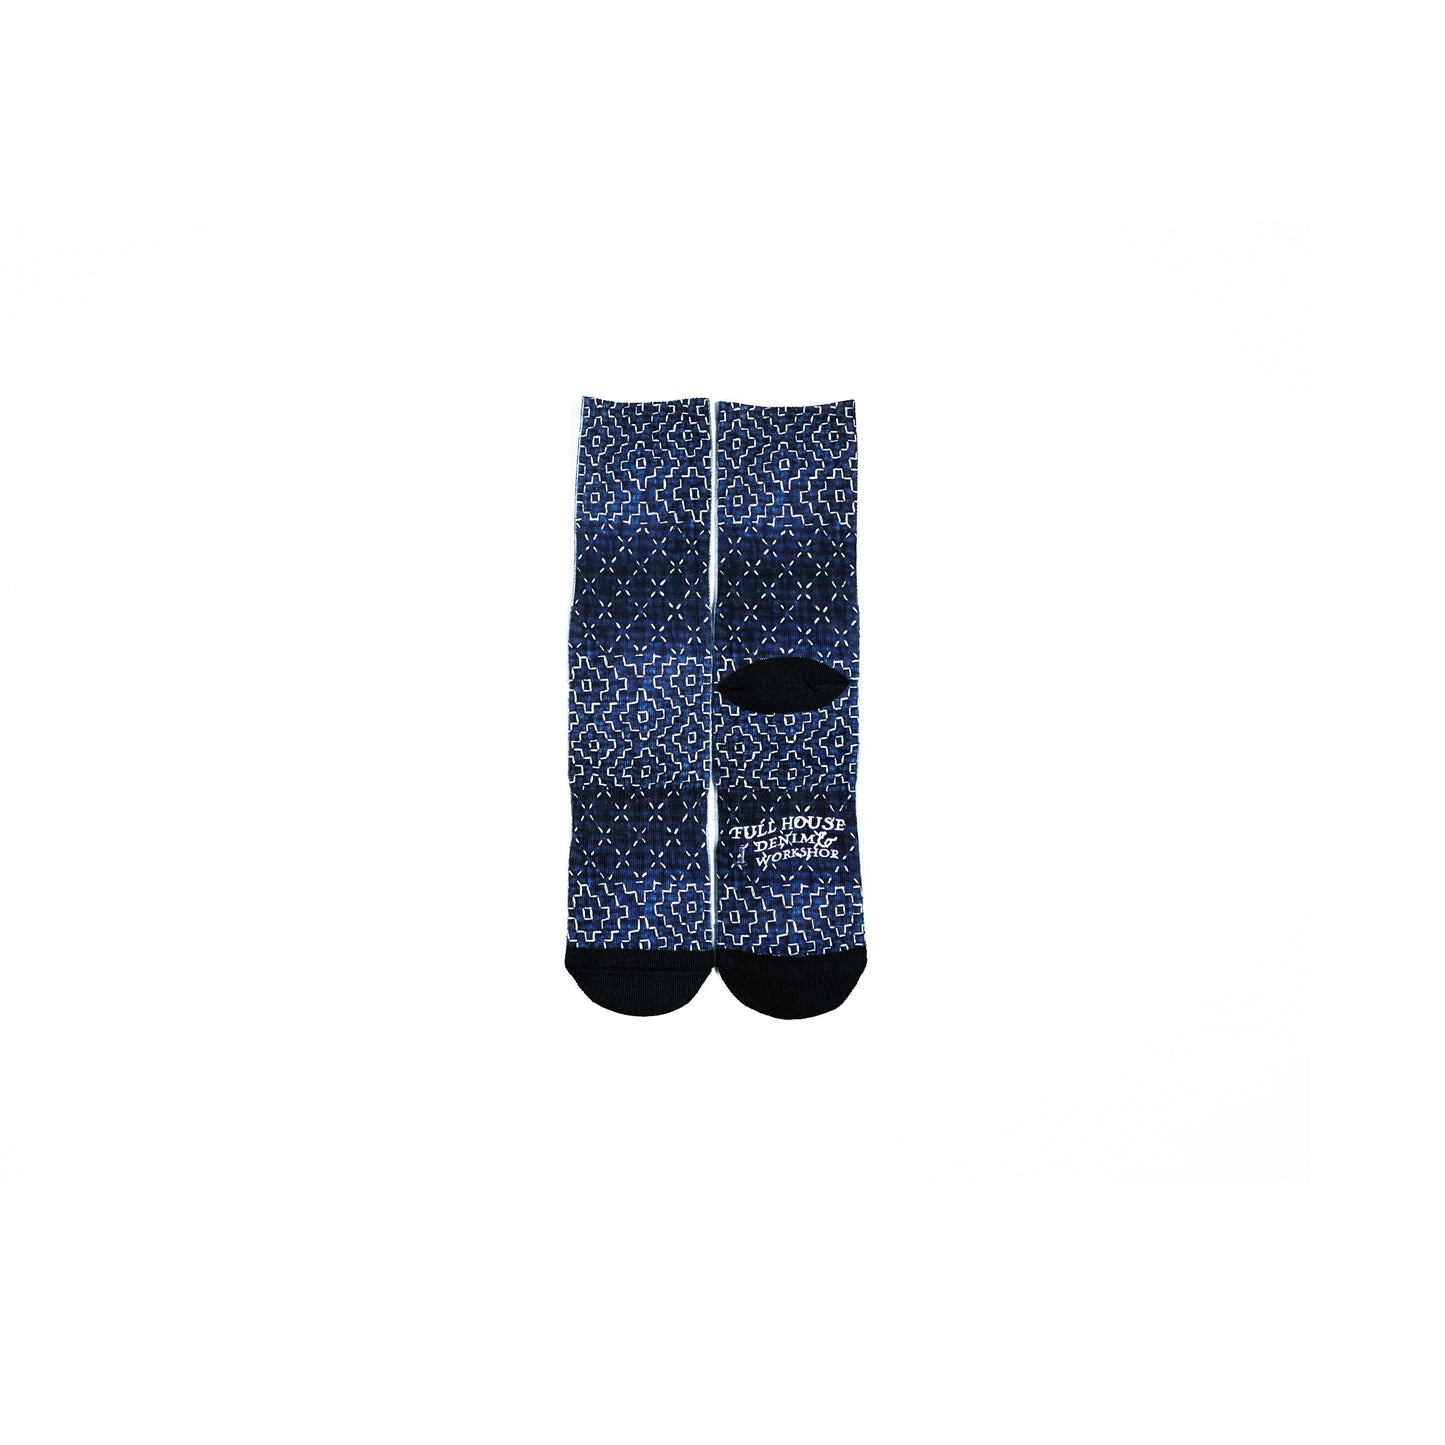 Sashiko Pattern Digital Print Socks